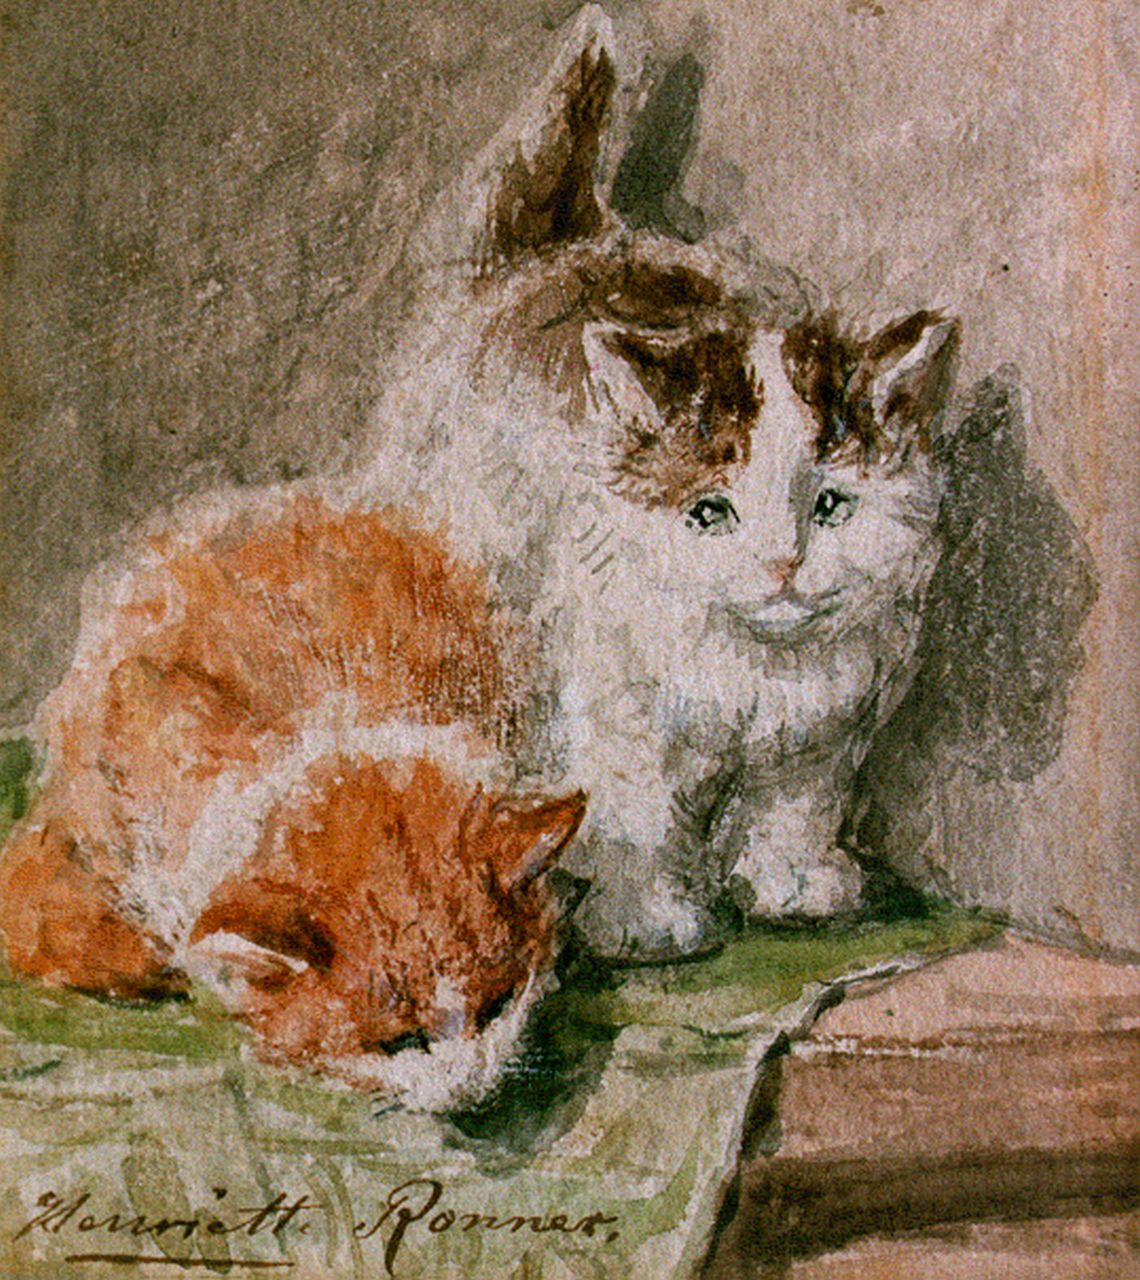 Ronner-Knip H.  | Henriette Ronner-Knip, Twee katjes op een tafel, aquarel op papier 11,5 x 9,5 cm, gesigneerd linksonder